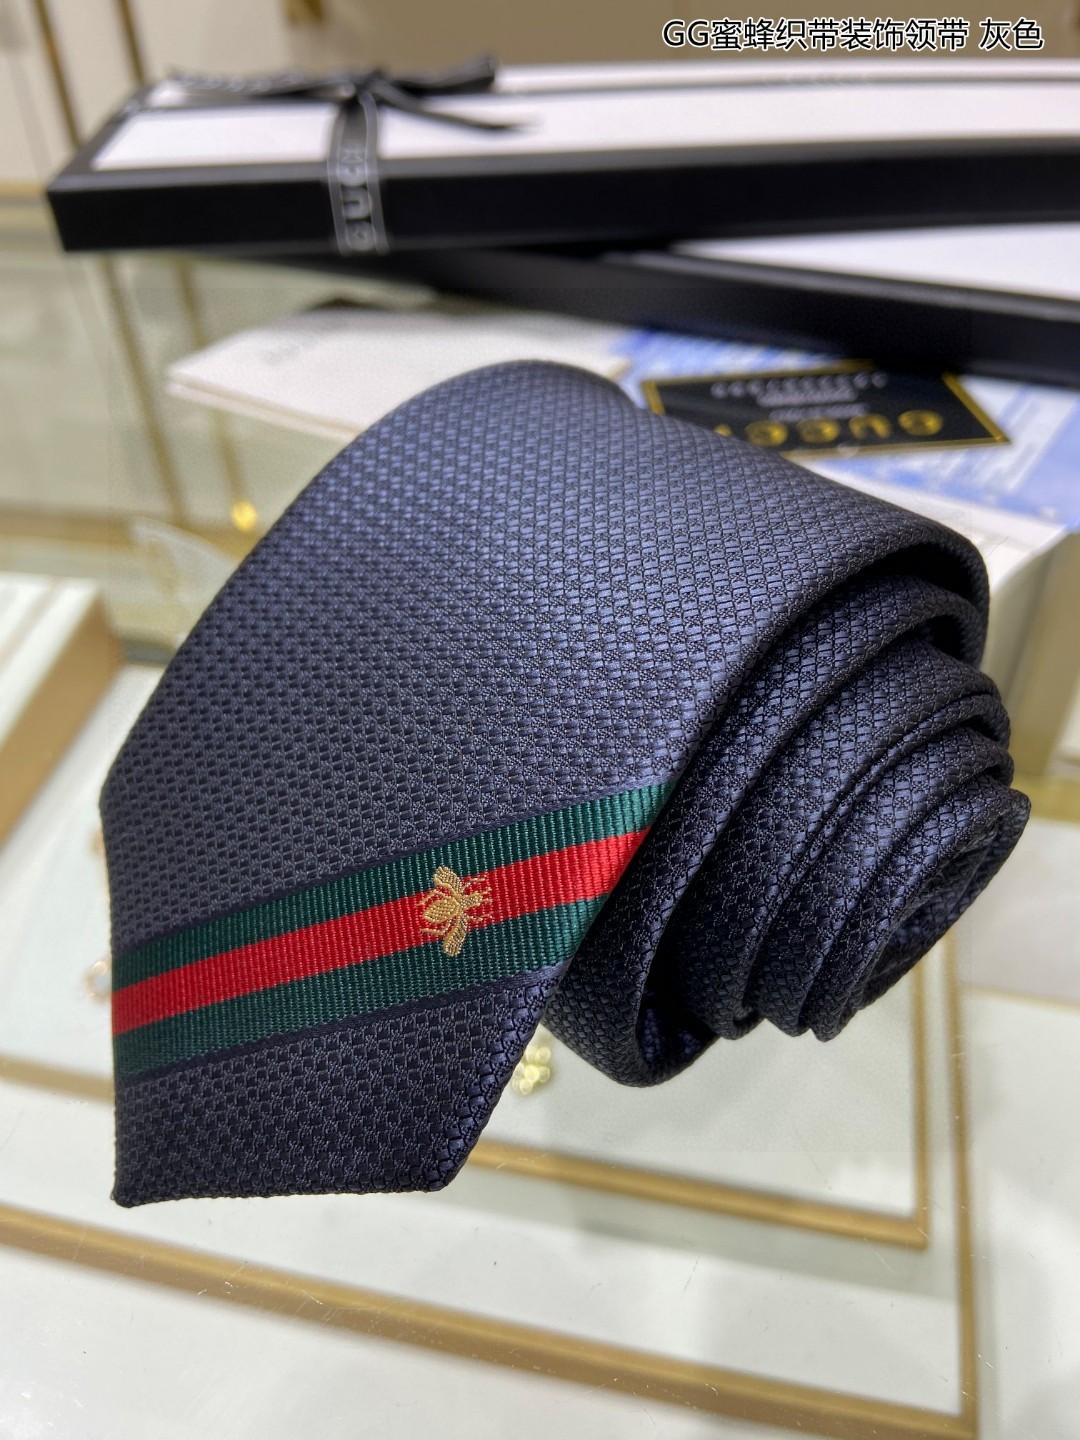 特价家男士领带系列GG蜜蜂织带装饰领带稀有展现精湛手工与时尚优雅的理想选择这款领带将标志性的主题动物小蜜